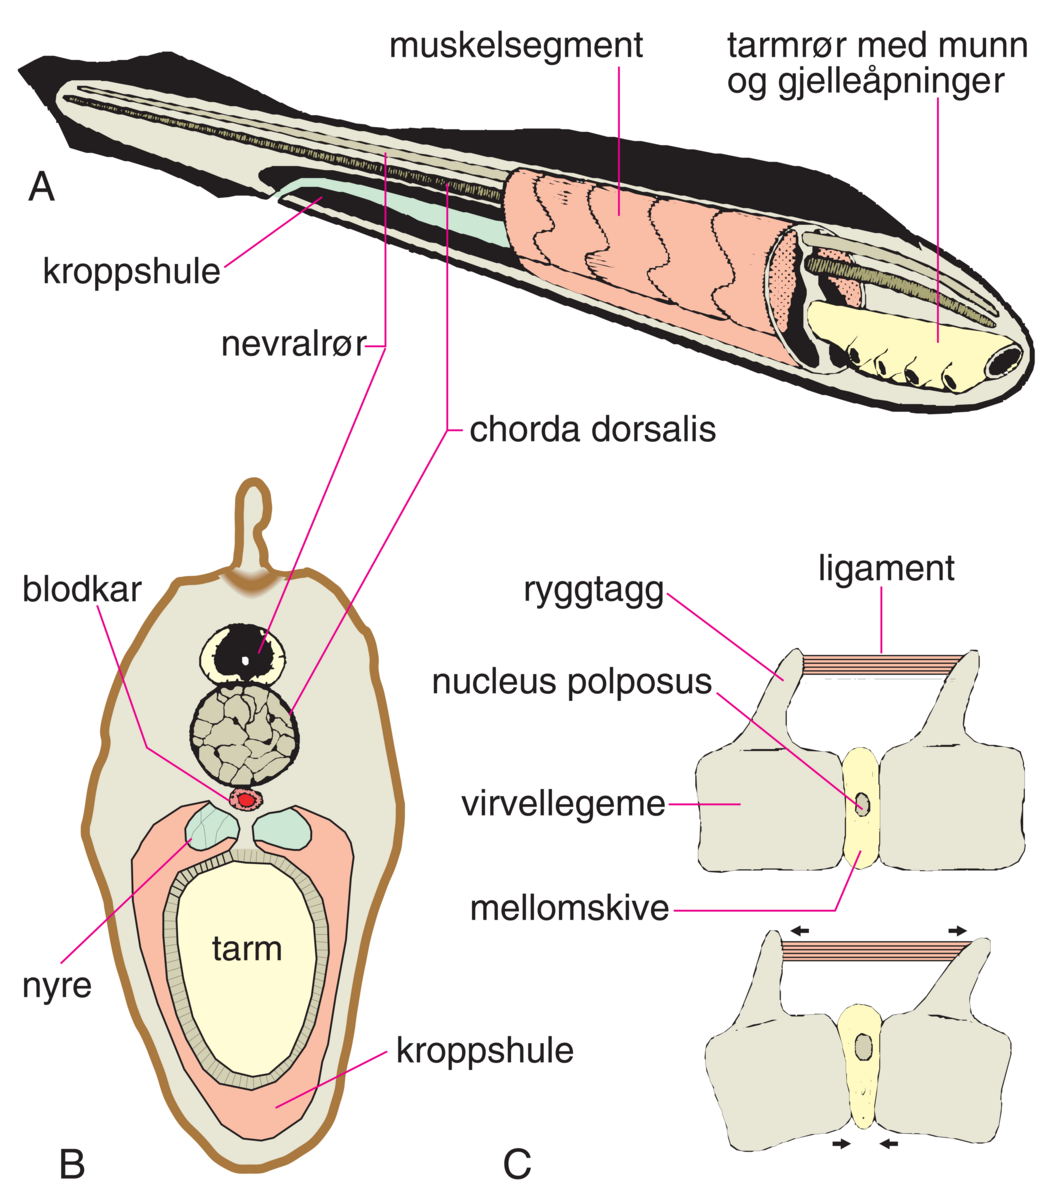 Chorda dorsalis